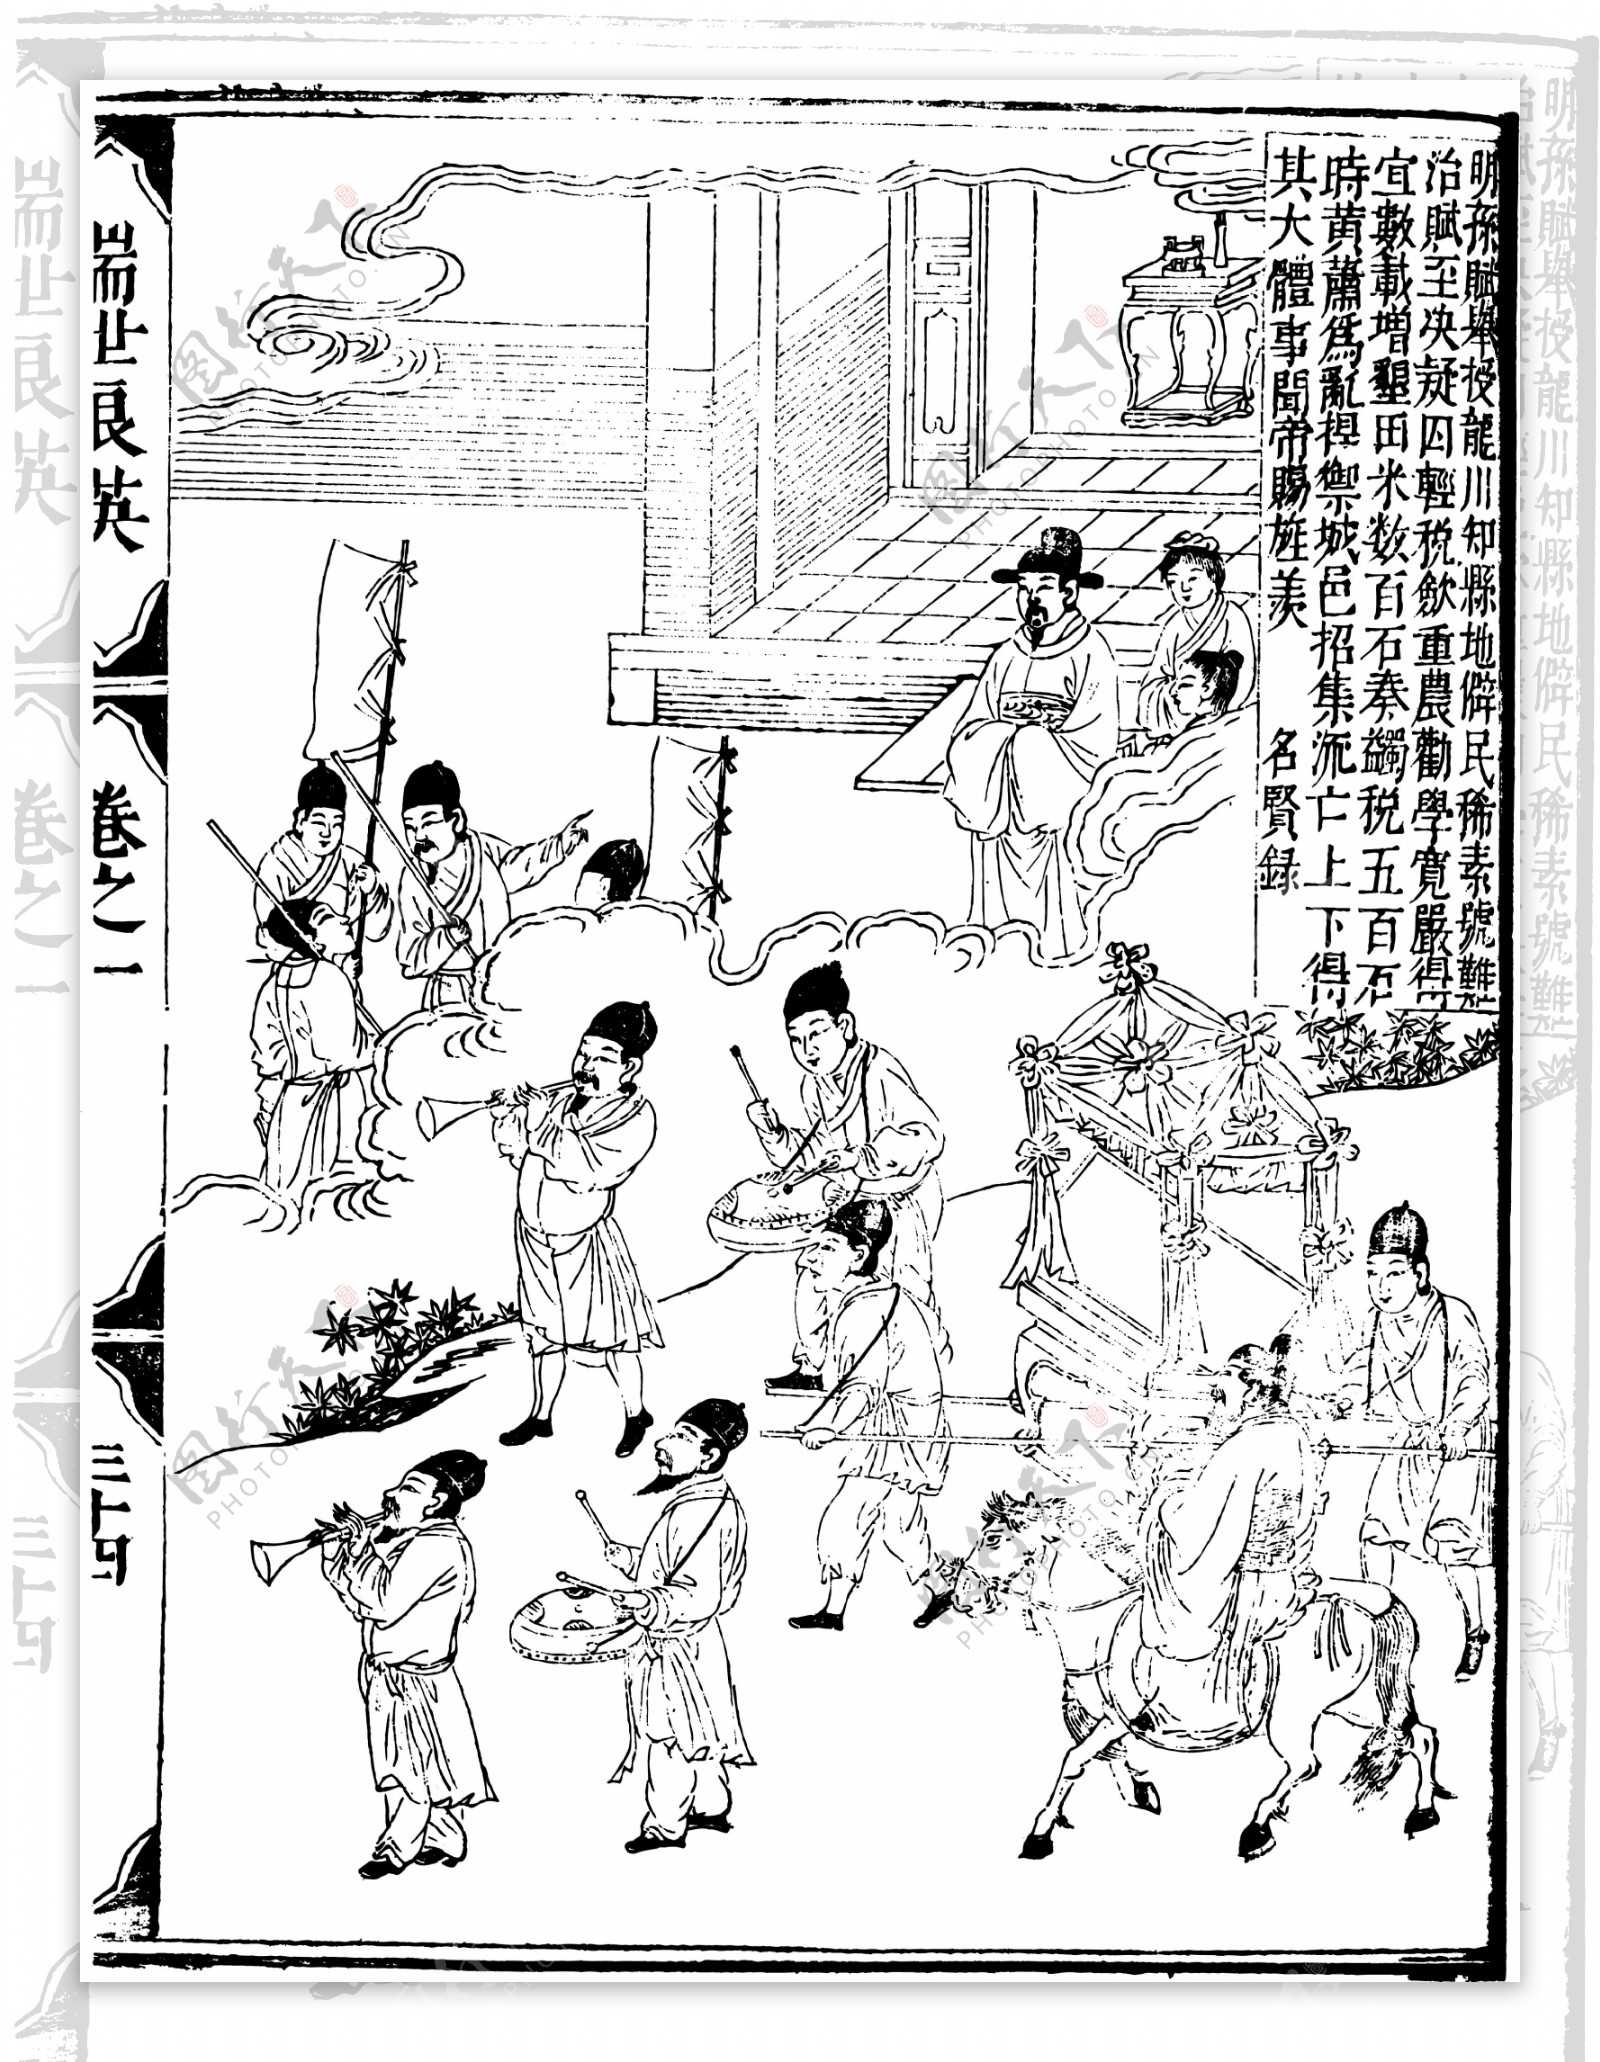 瑞世良英木刻版画中国传统文化58